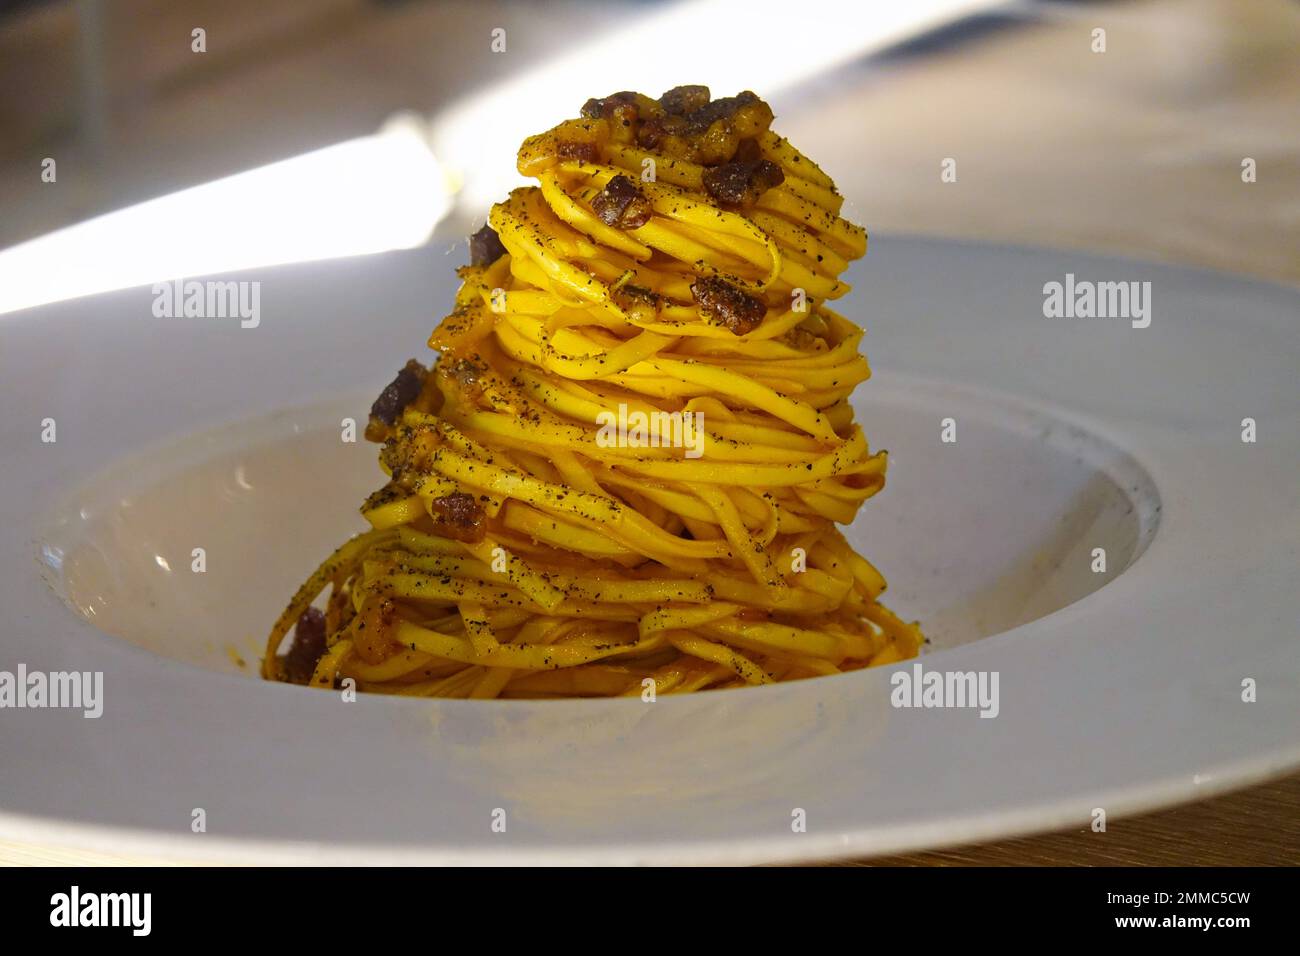 Plat de spaghetti Carbonara, une recette typiquement italienne de pâtes avec guanciale, oeuf et fromage de pécorino romano Banque D'Images